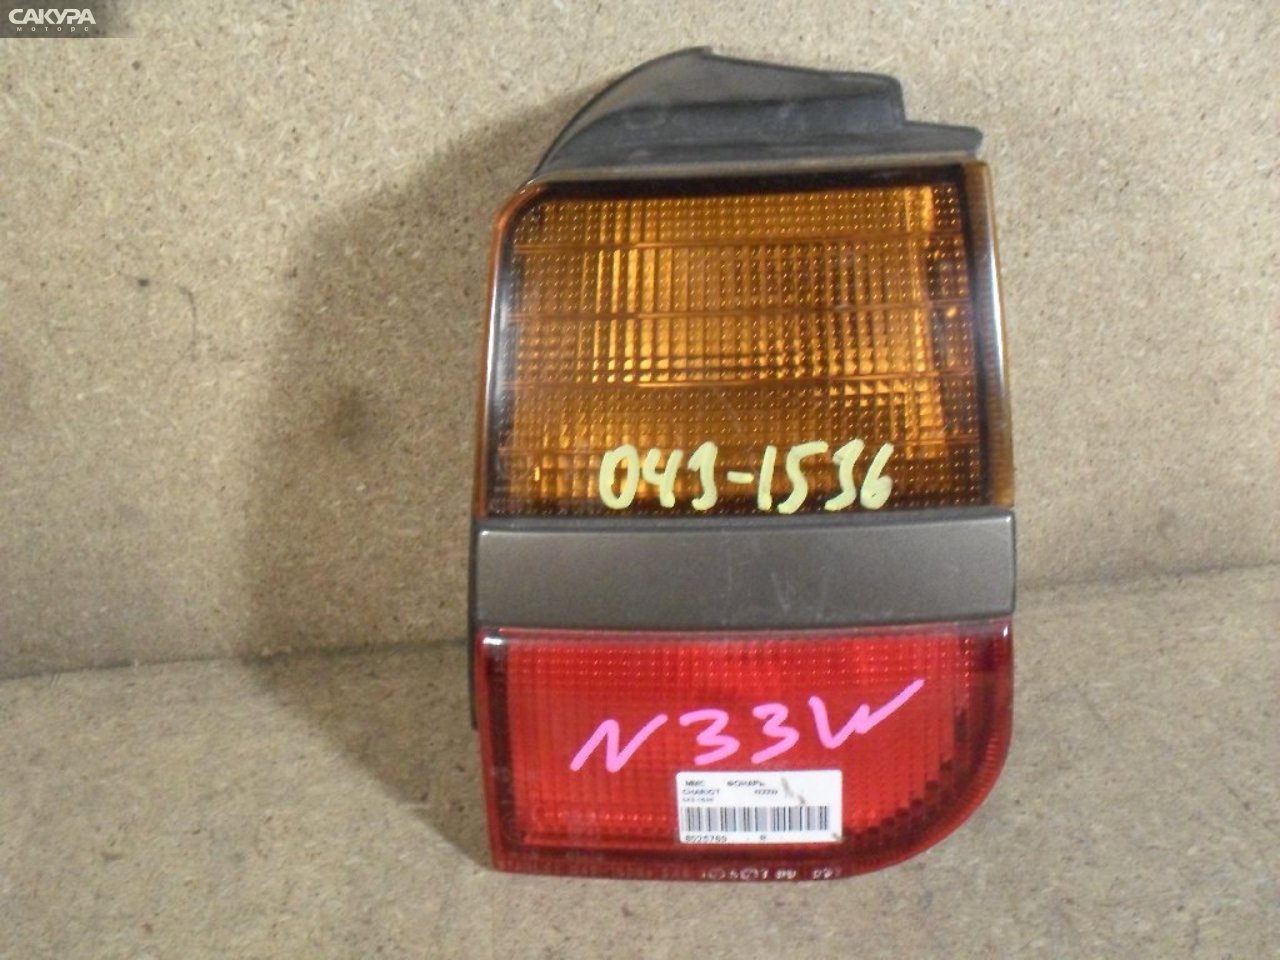 Фонарь стоп-сигнала правый Mitsubishi Chariot N33W 043-1536: купить в Сакура Абакан.